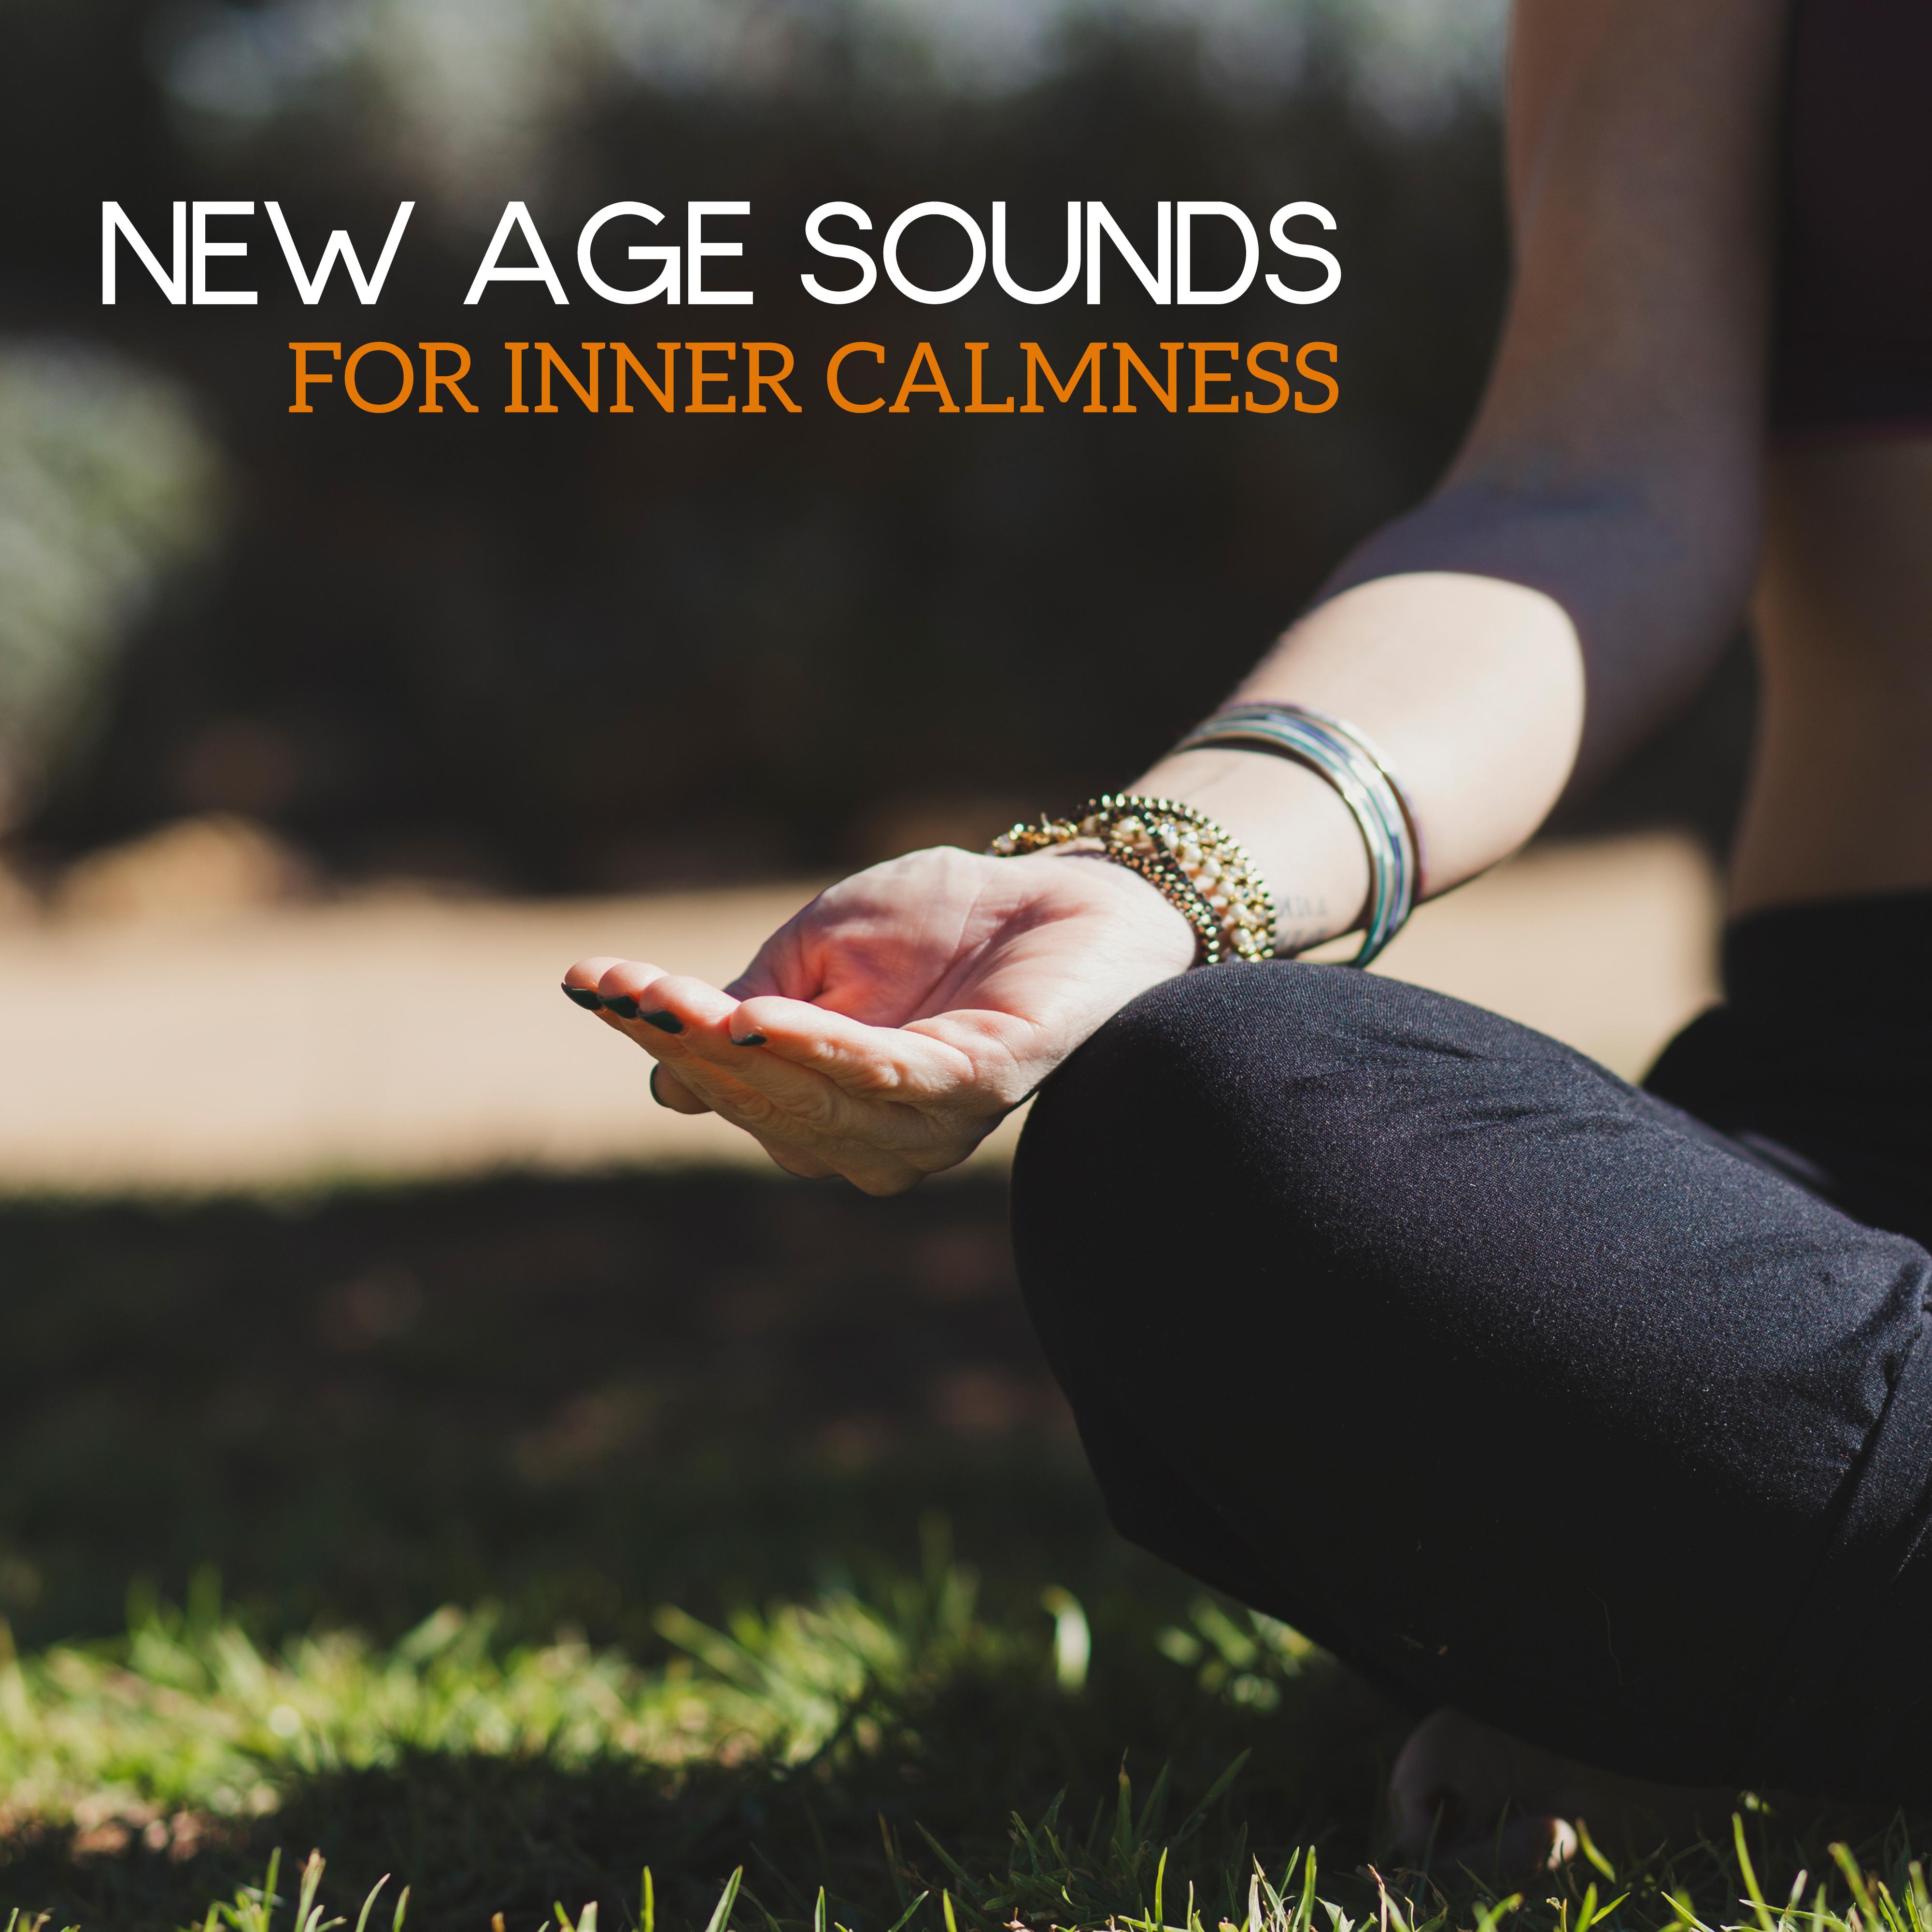 New Age Sounds for Inner Calmness